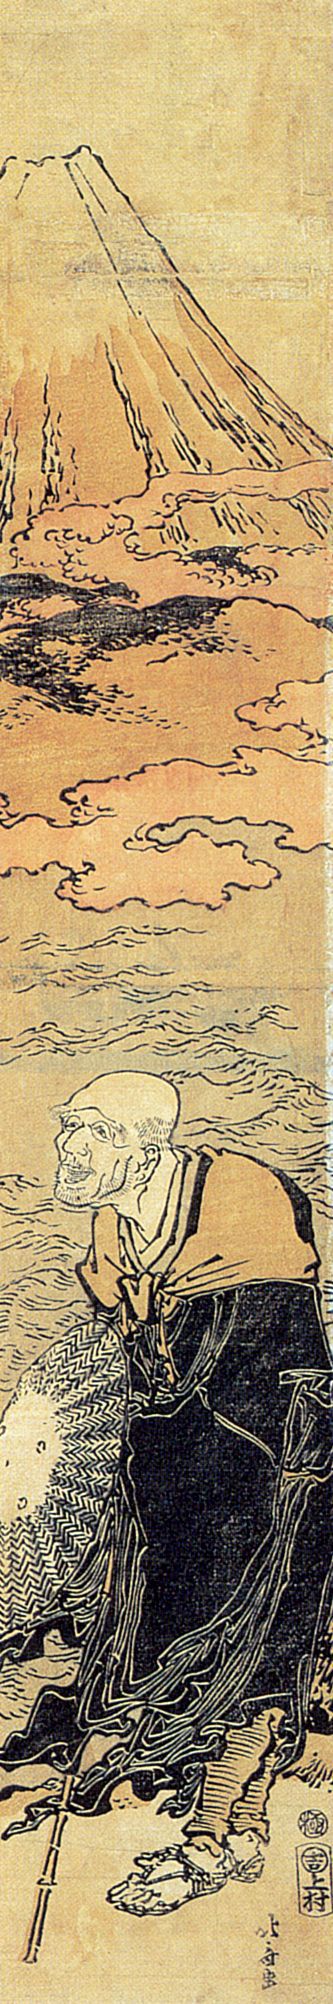 Katsushika Hokusai: Der Berg Fuji